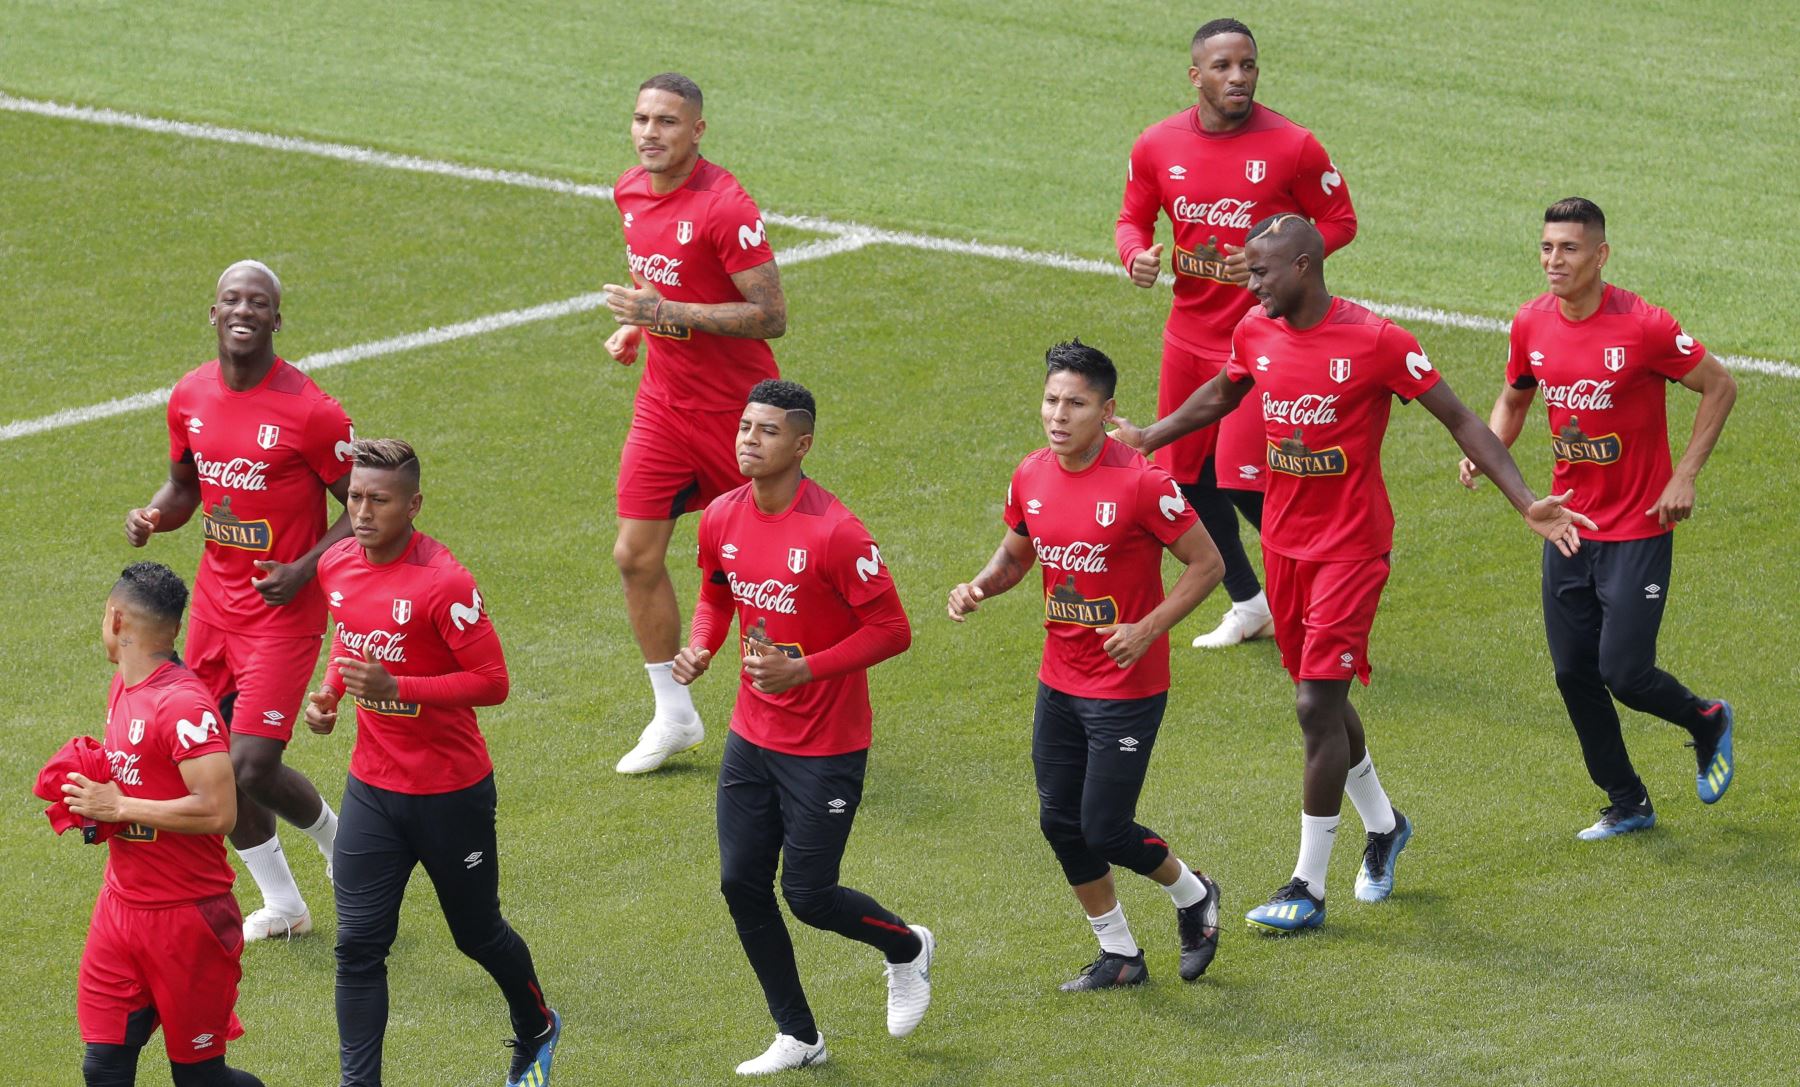 Los jugadores de la selección de Perú, durante la sesión de entrenamiento celebrada esta mañana en el estadio Khimki de Moscú, Rusia, de cara a su próximo partido frente a Francia, correspondiente al Grupo C de la primera fase del Mundial Rusia 2018, el próximo 21 de junio. EFE